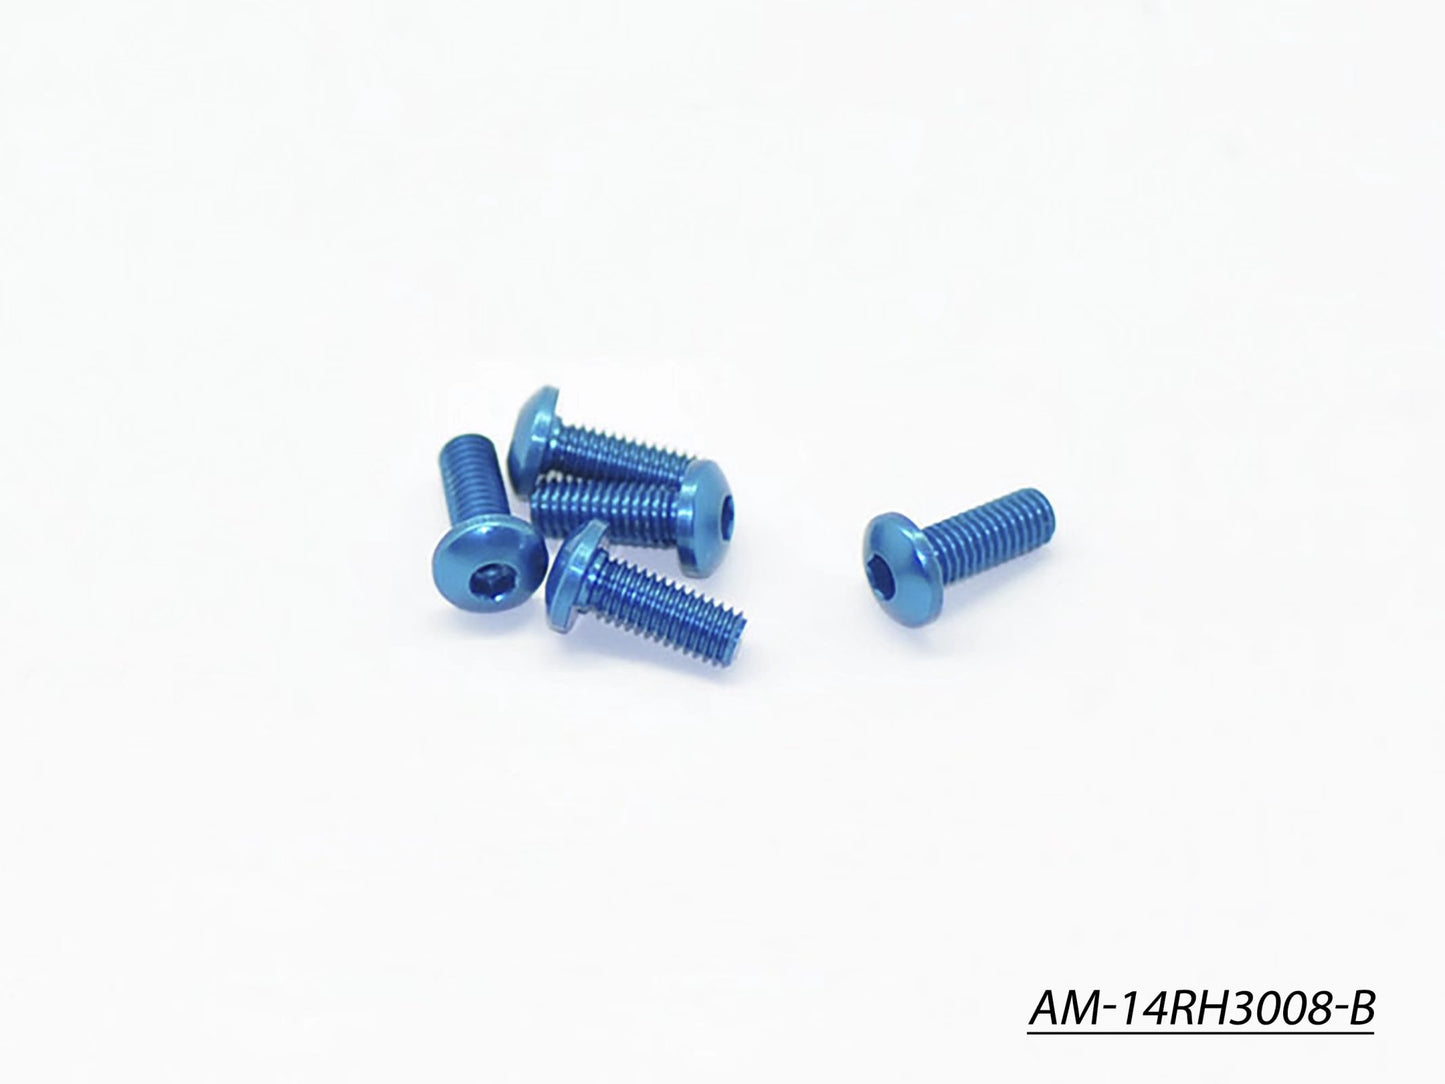 Alu Screw Allen Roundhead M3X8 Blue (7075) (5)  (AM-14RH3008-B)